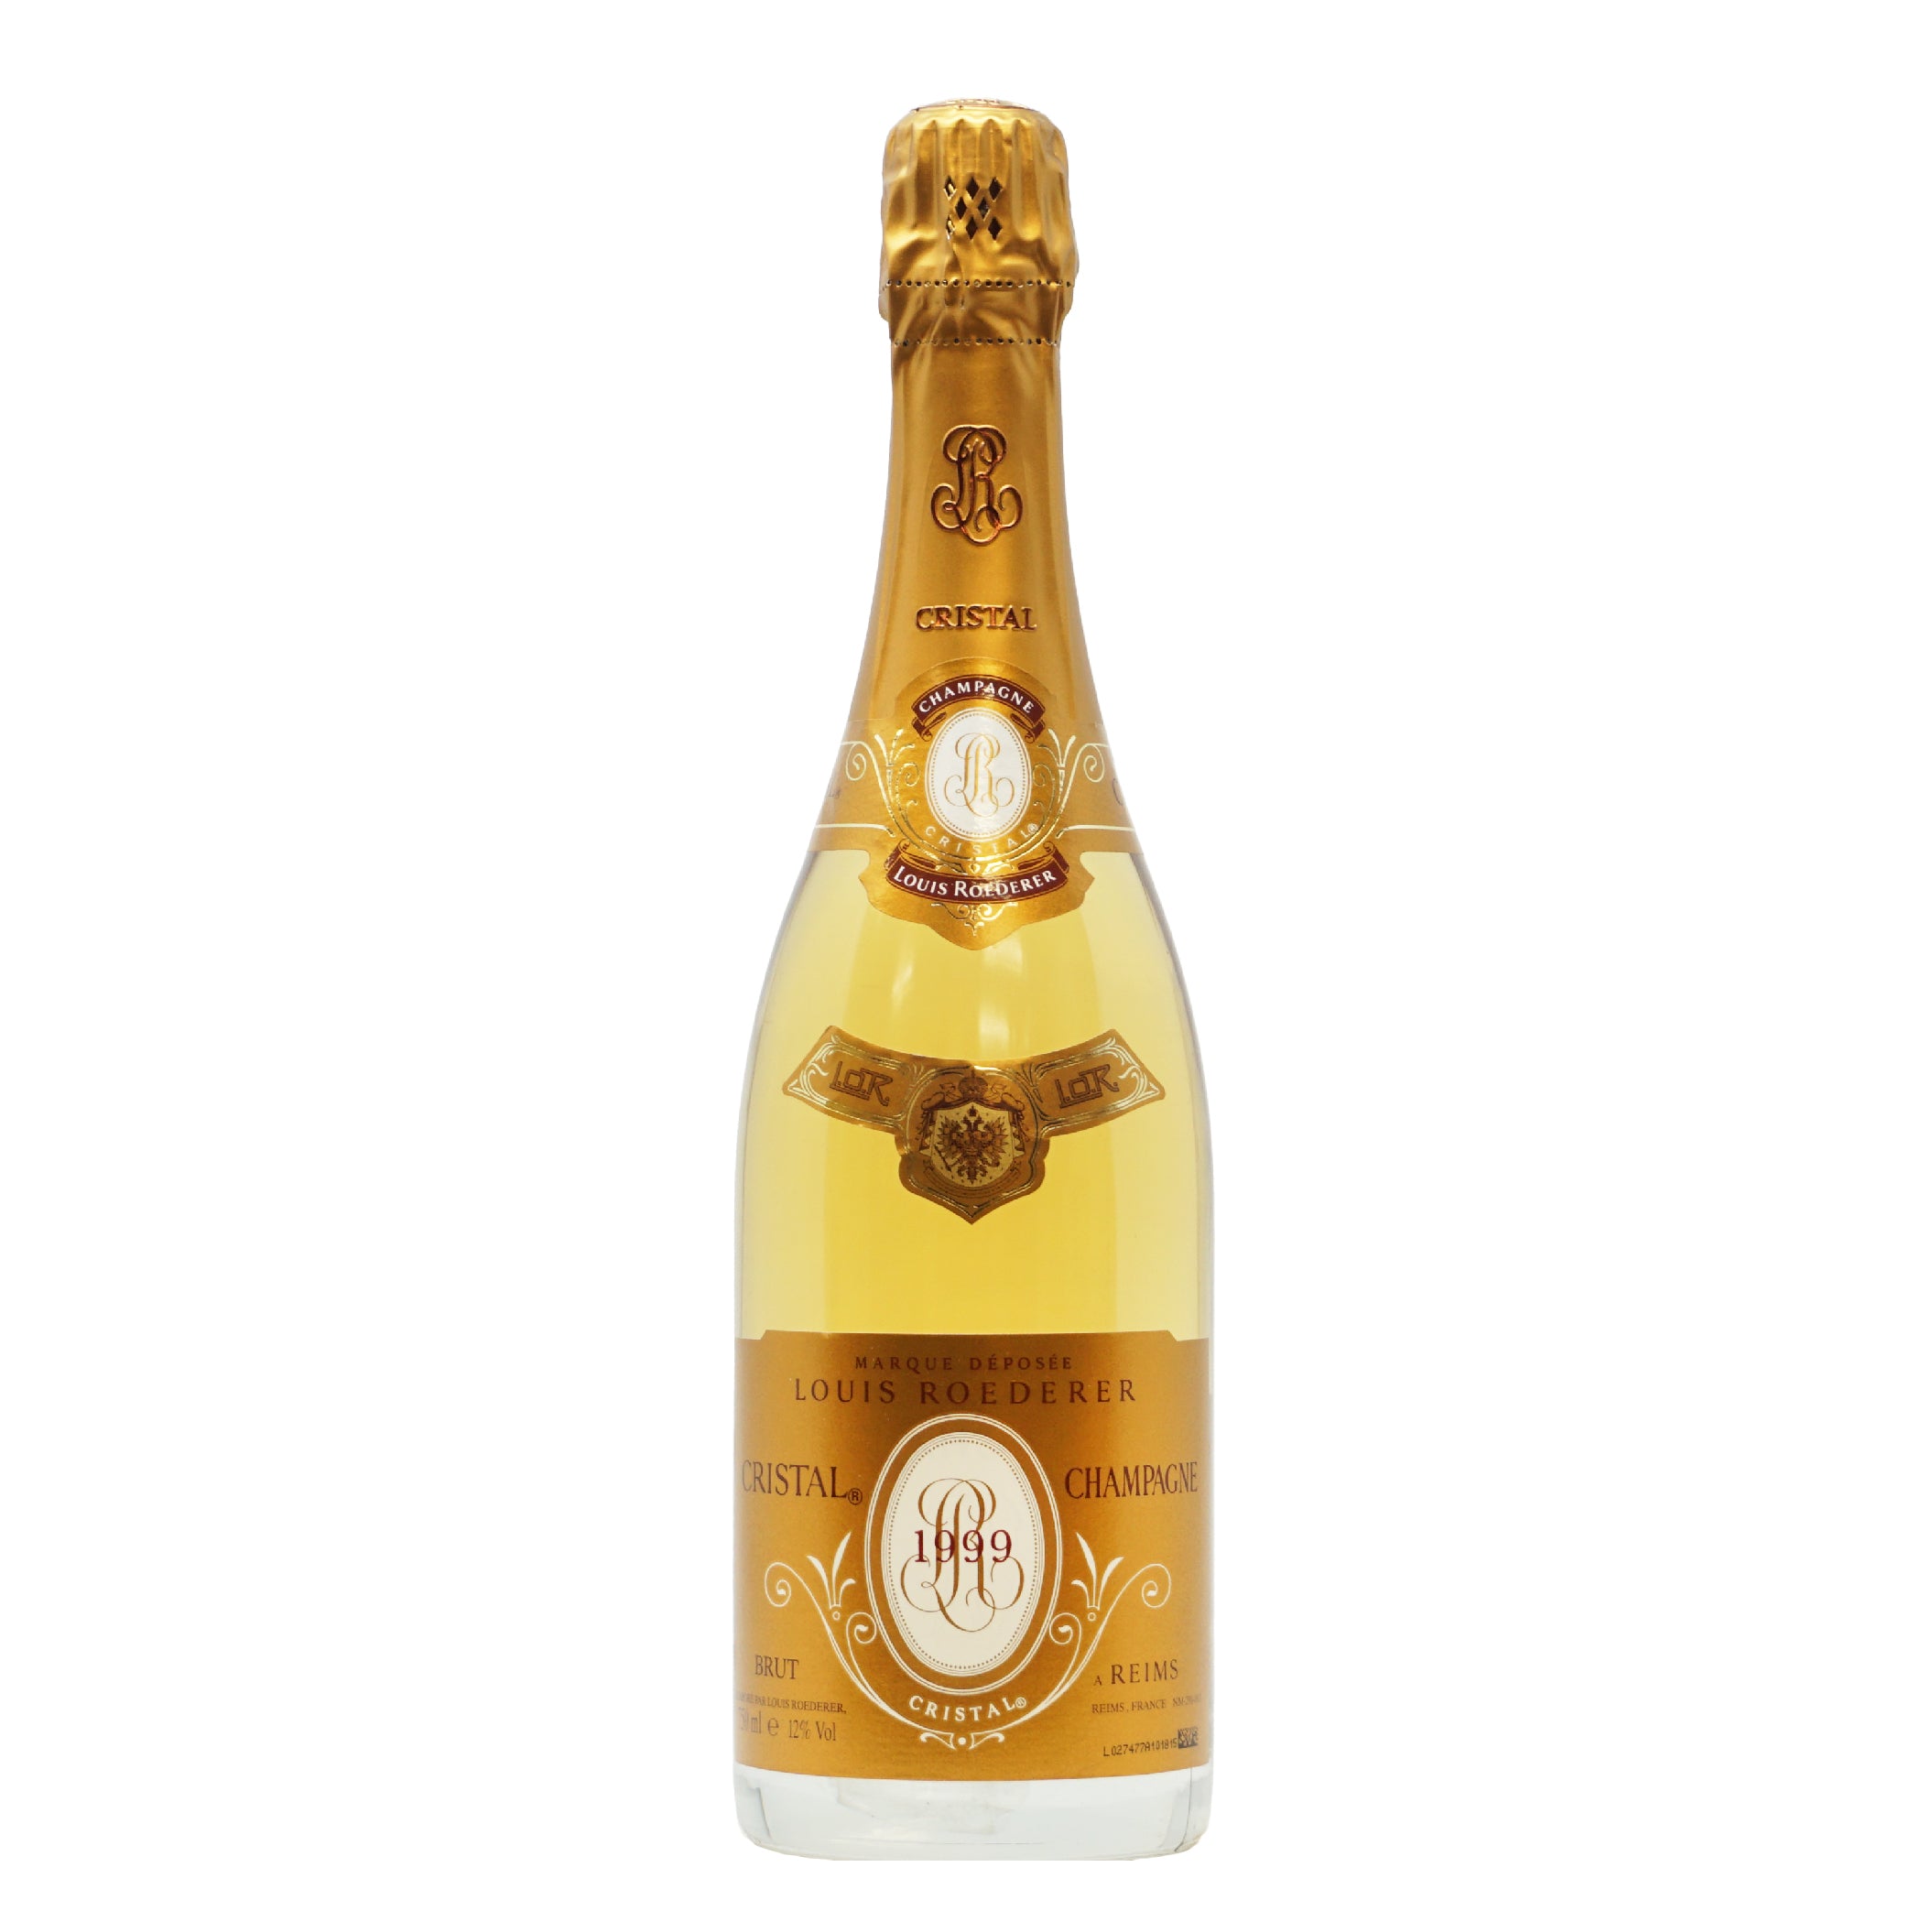 Champagne Cristal 1999 Louis Roederer lt.0,750